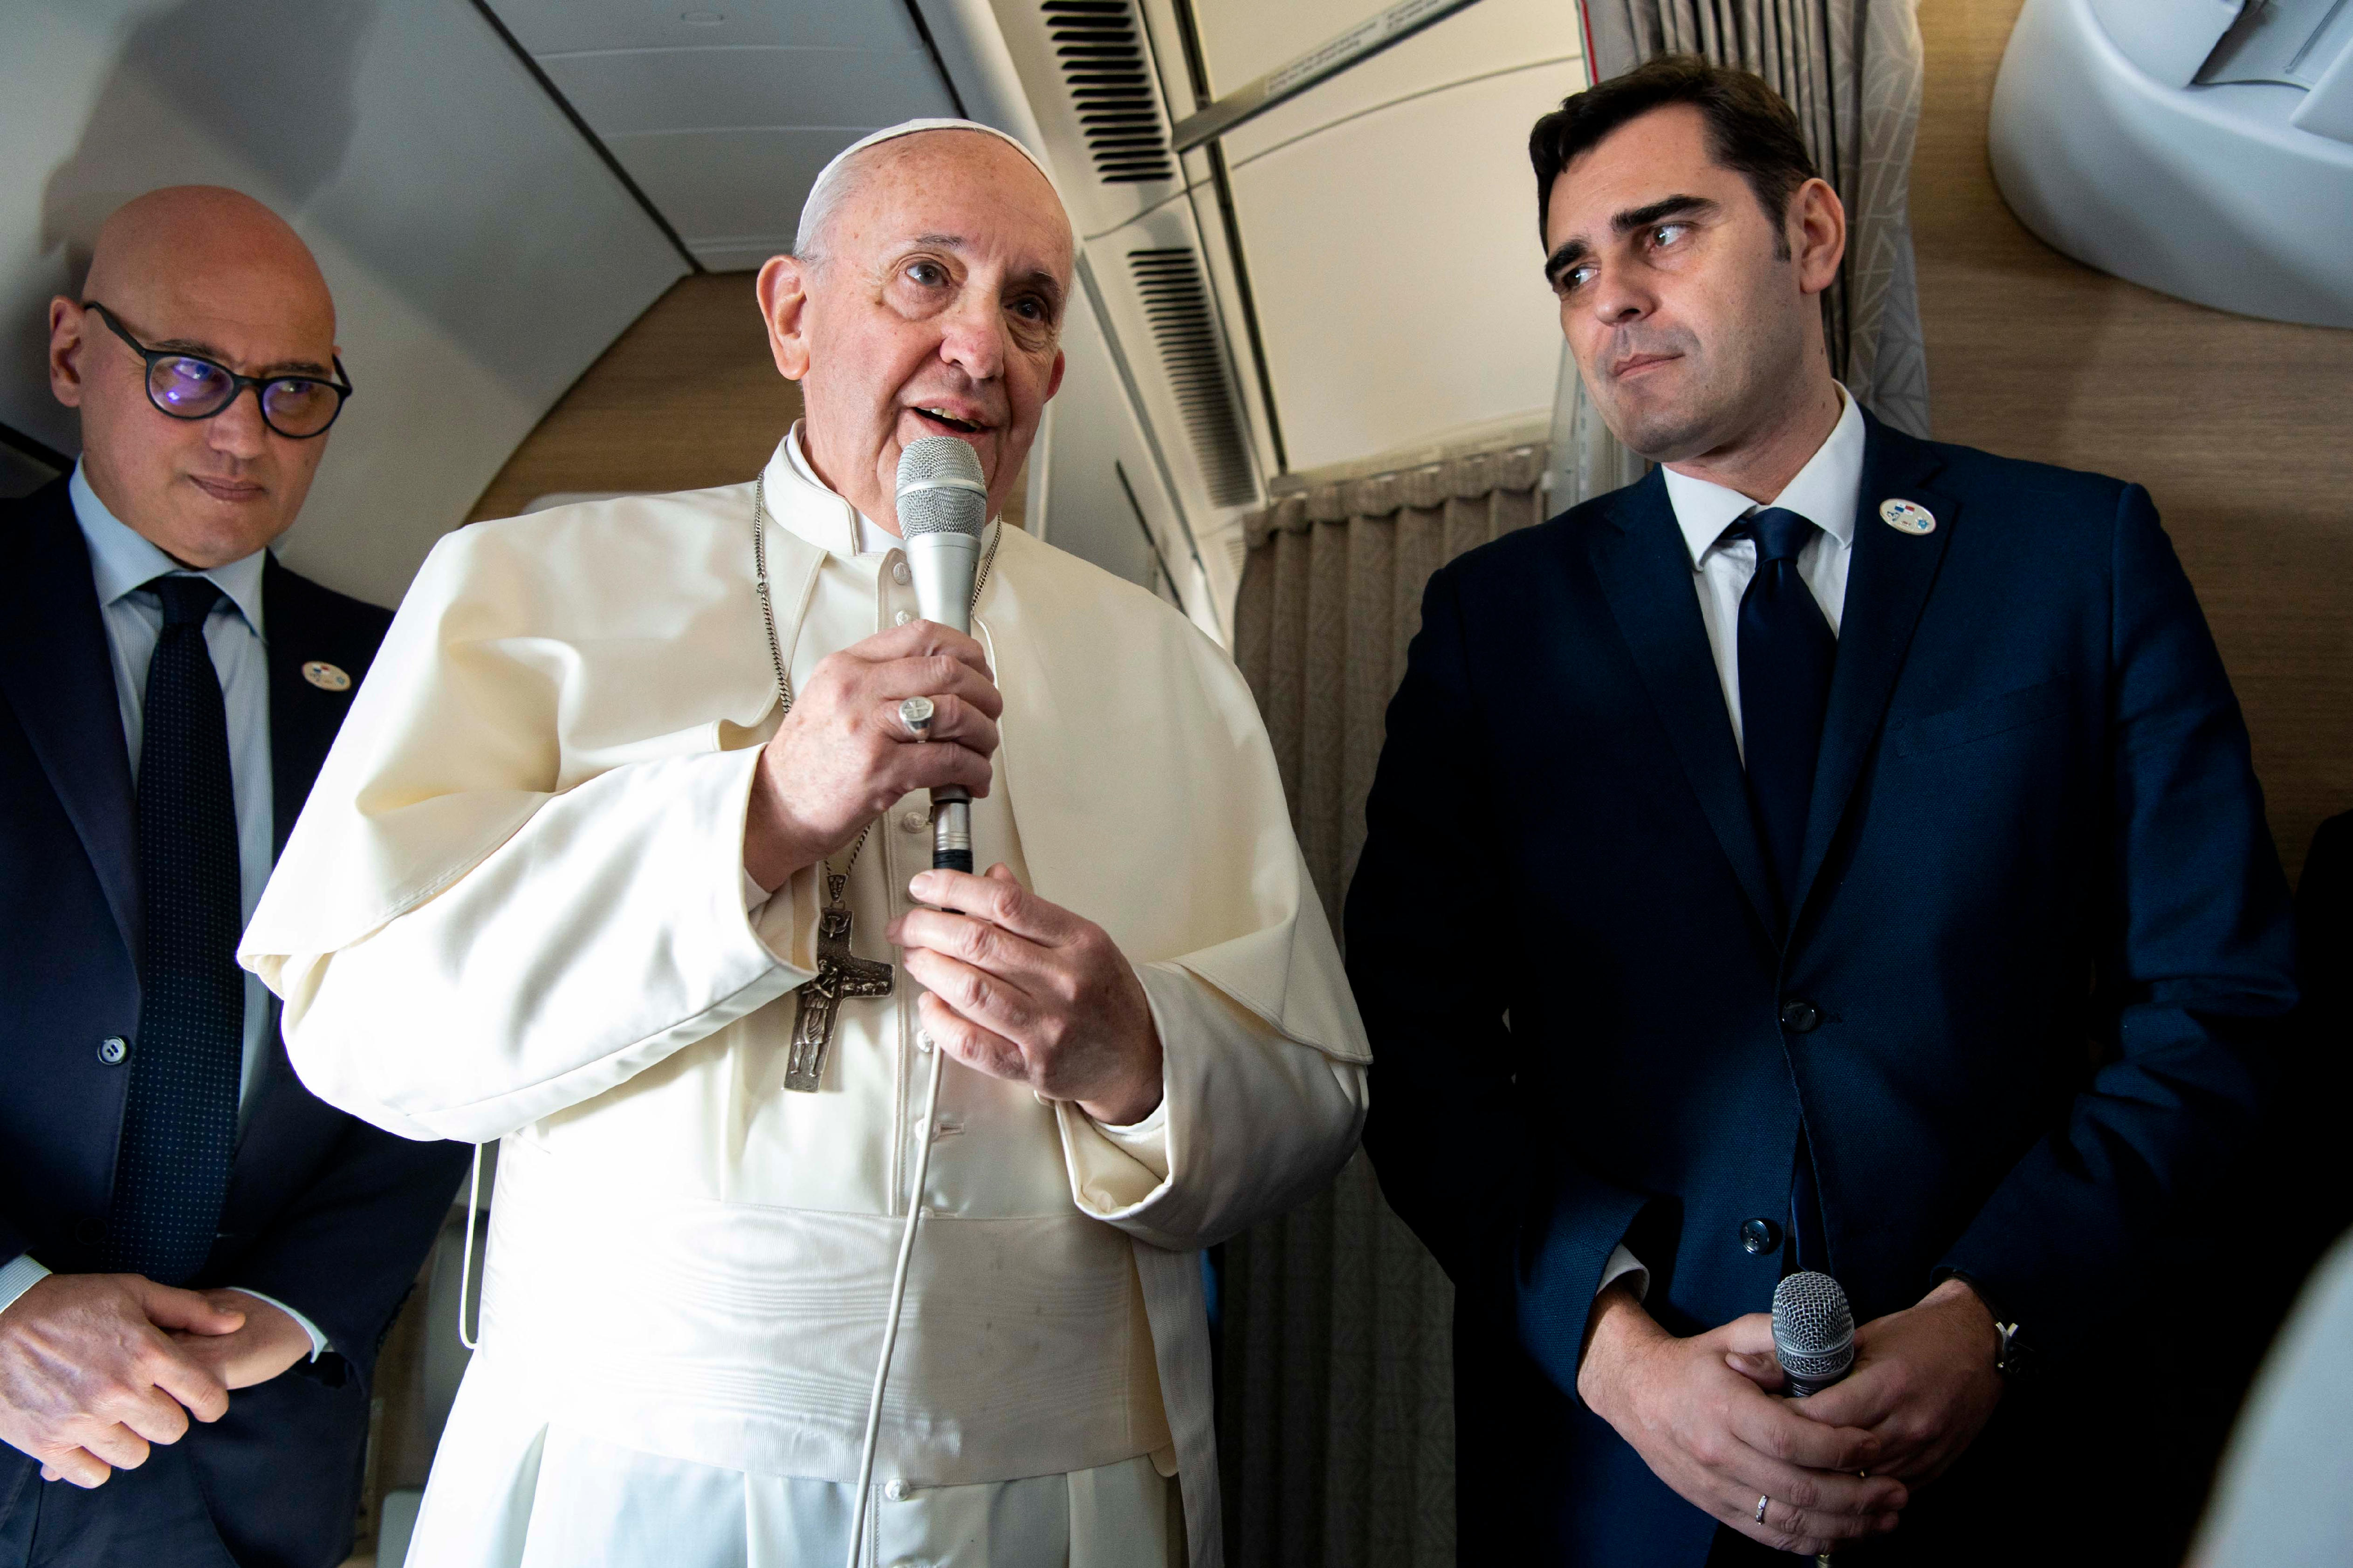 El Papa se dirige a los periodistas en el avión que le lleva a Panamá, 23 enero 2019 © Vatican Media